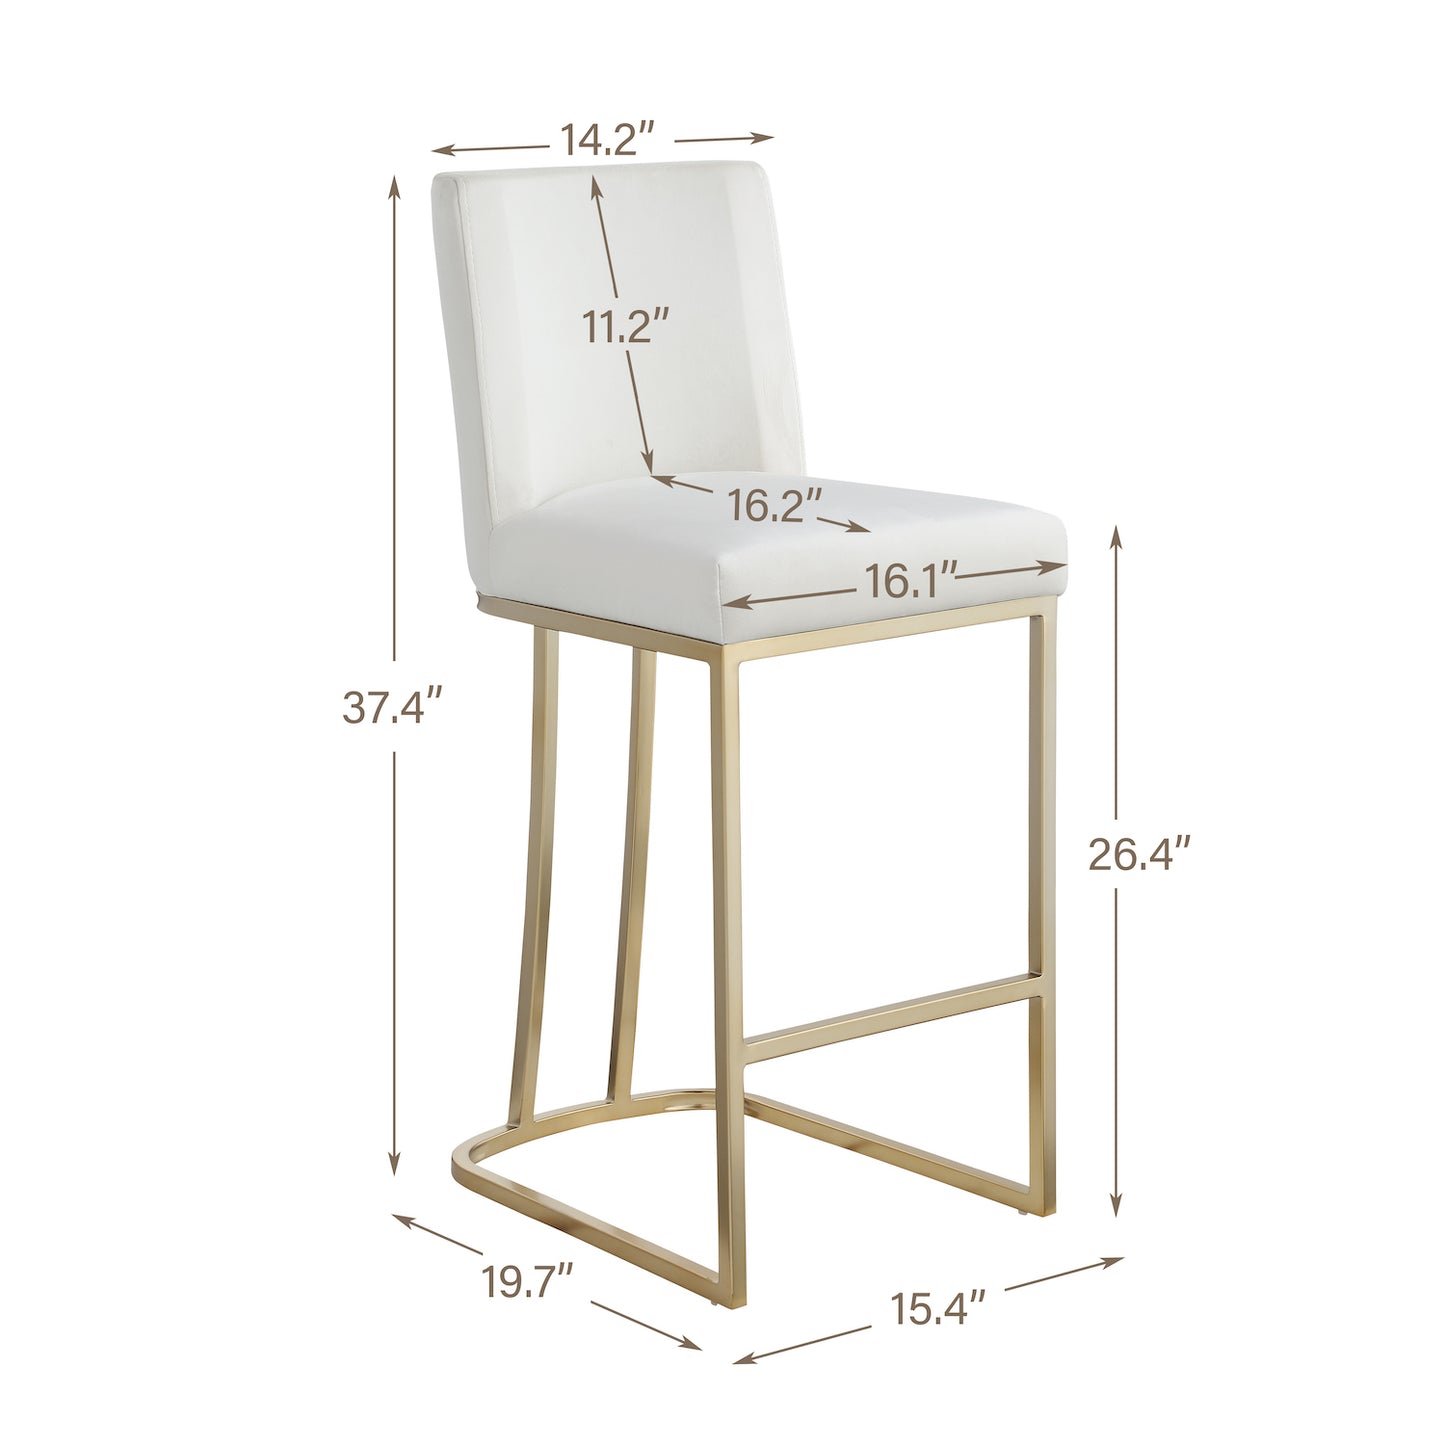 Woker Furniture Velvet Counter Height Chairs Set of 2 - White